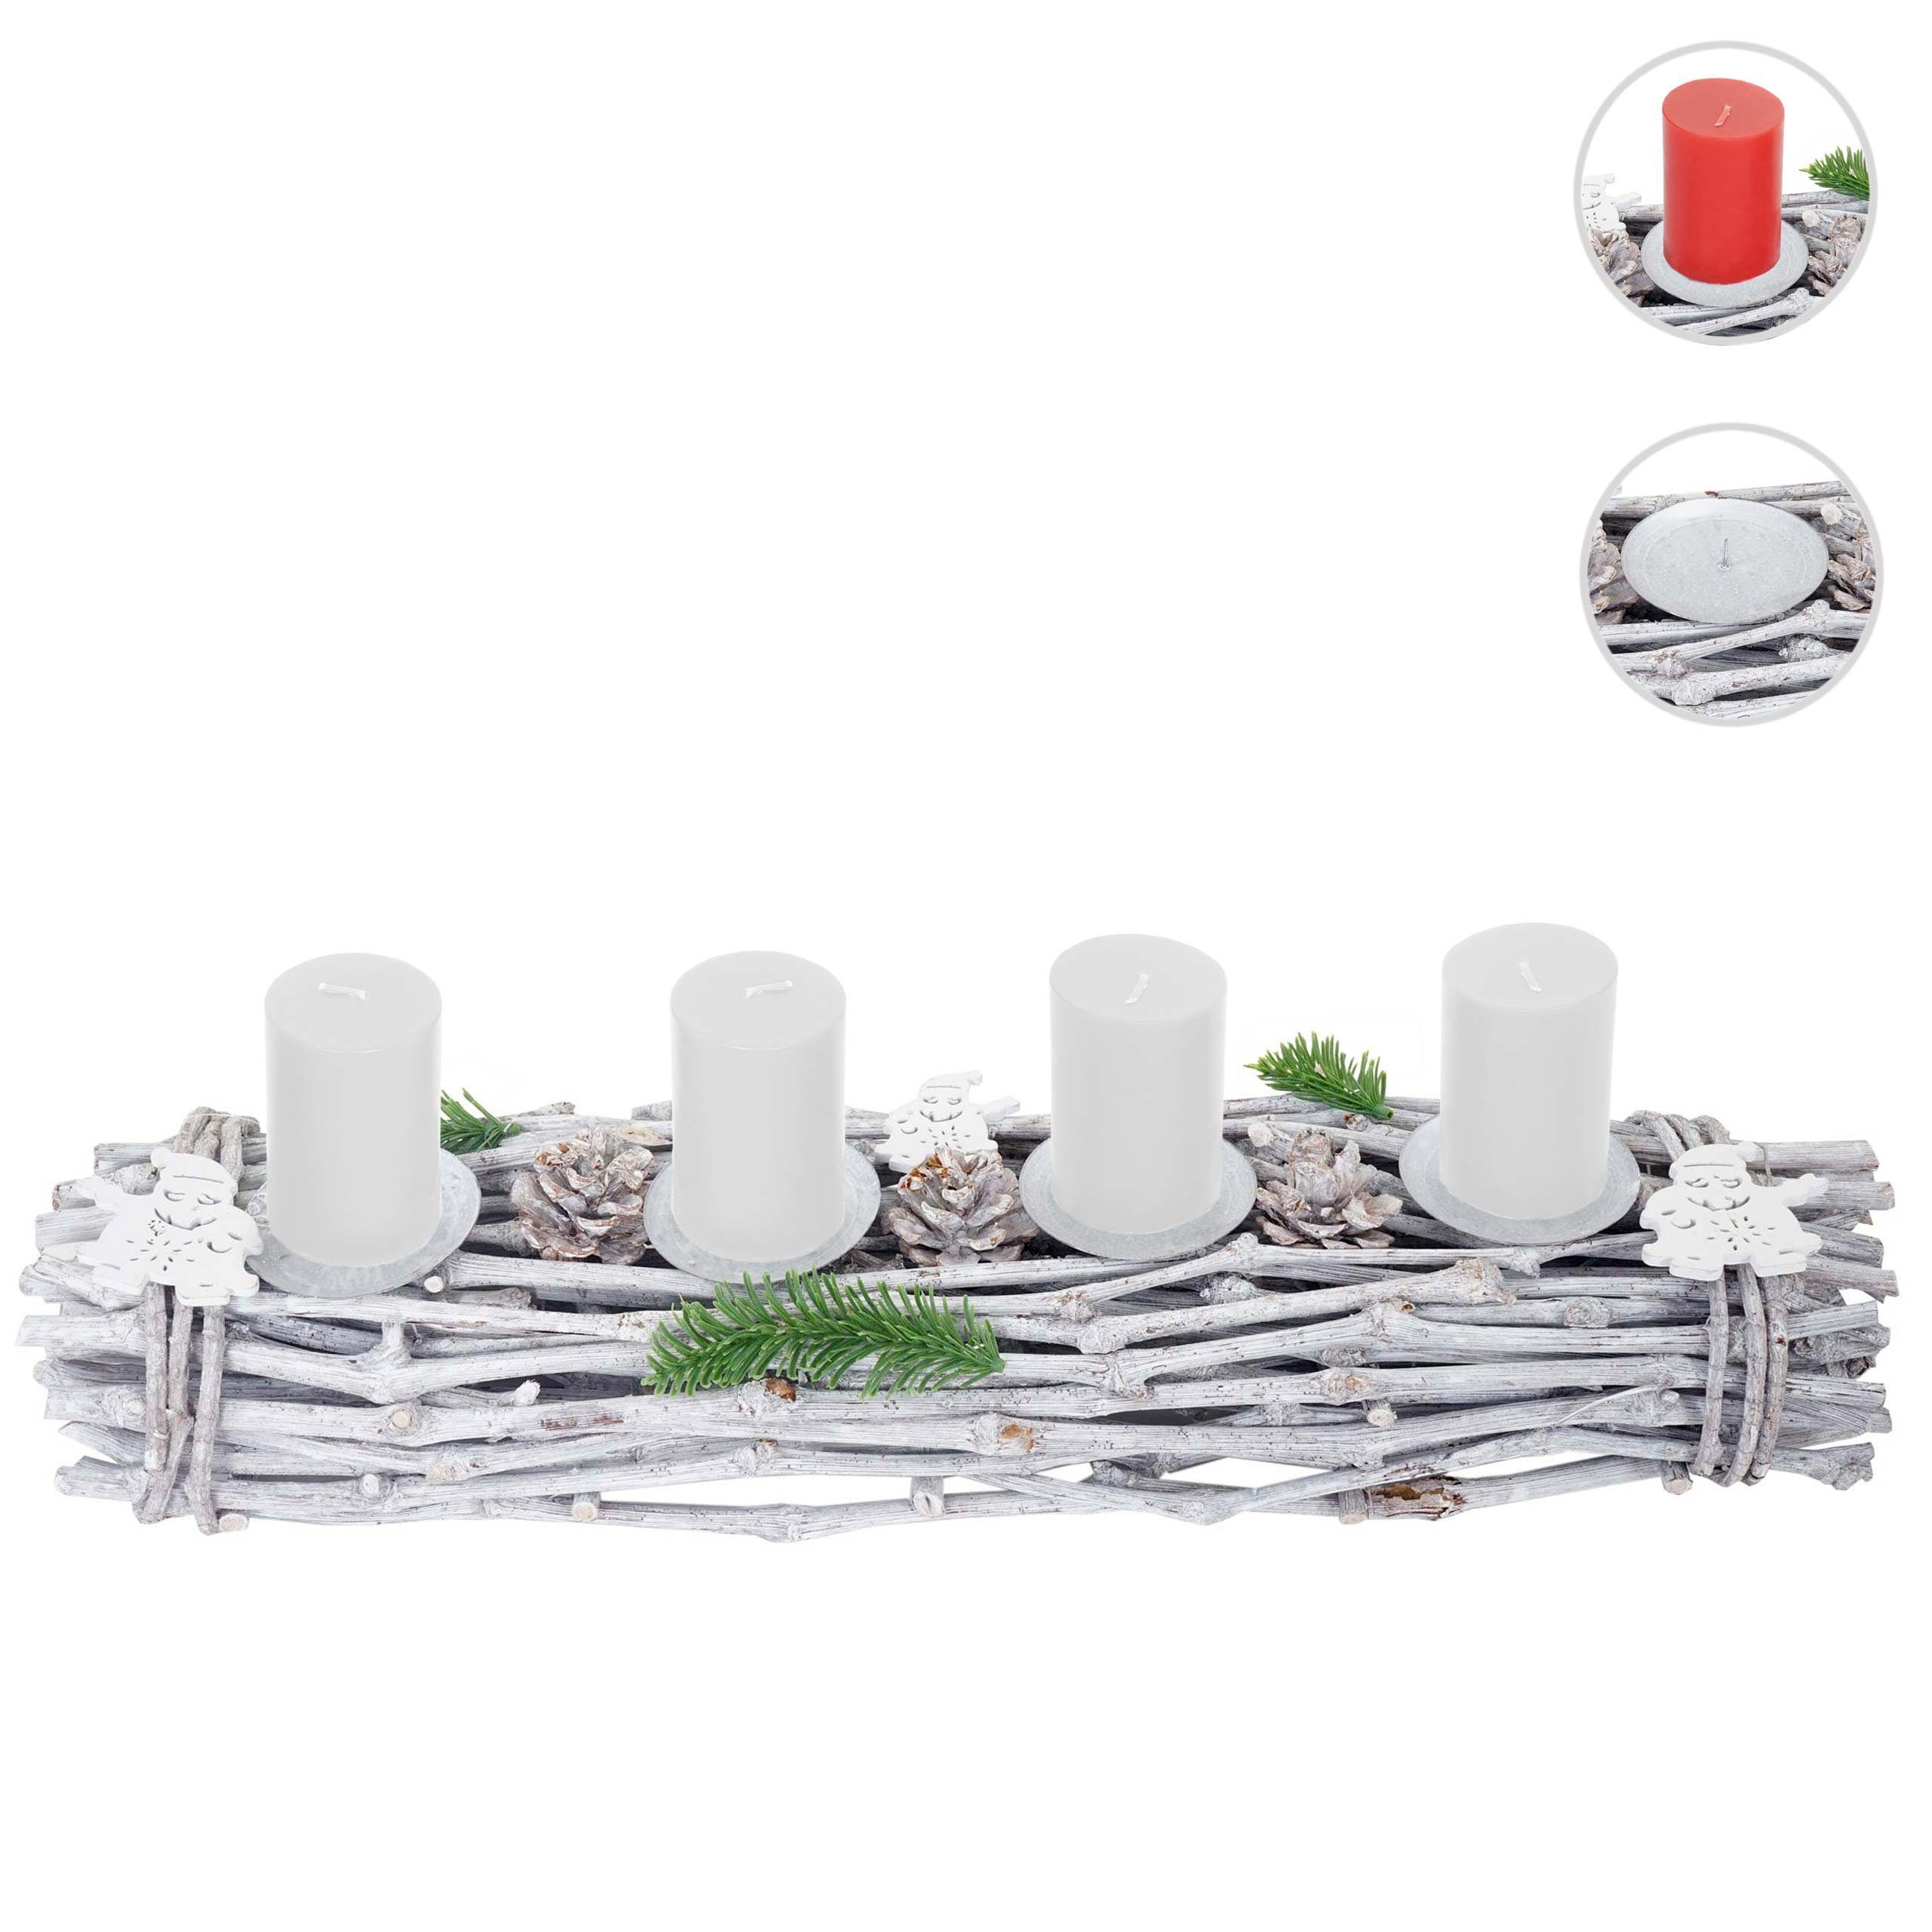 Aufwendig MCW Mit Adventskranz Kerzen 4 weiß, geschmückt T783-L, Kerzenhaltern, weiße